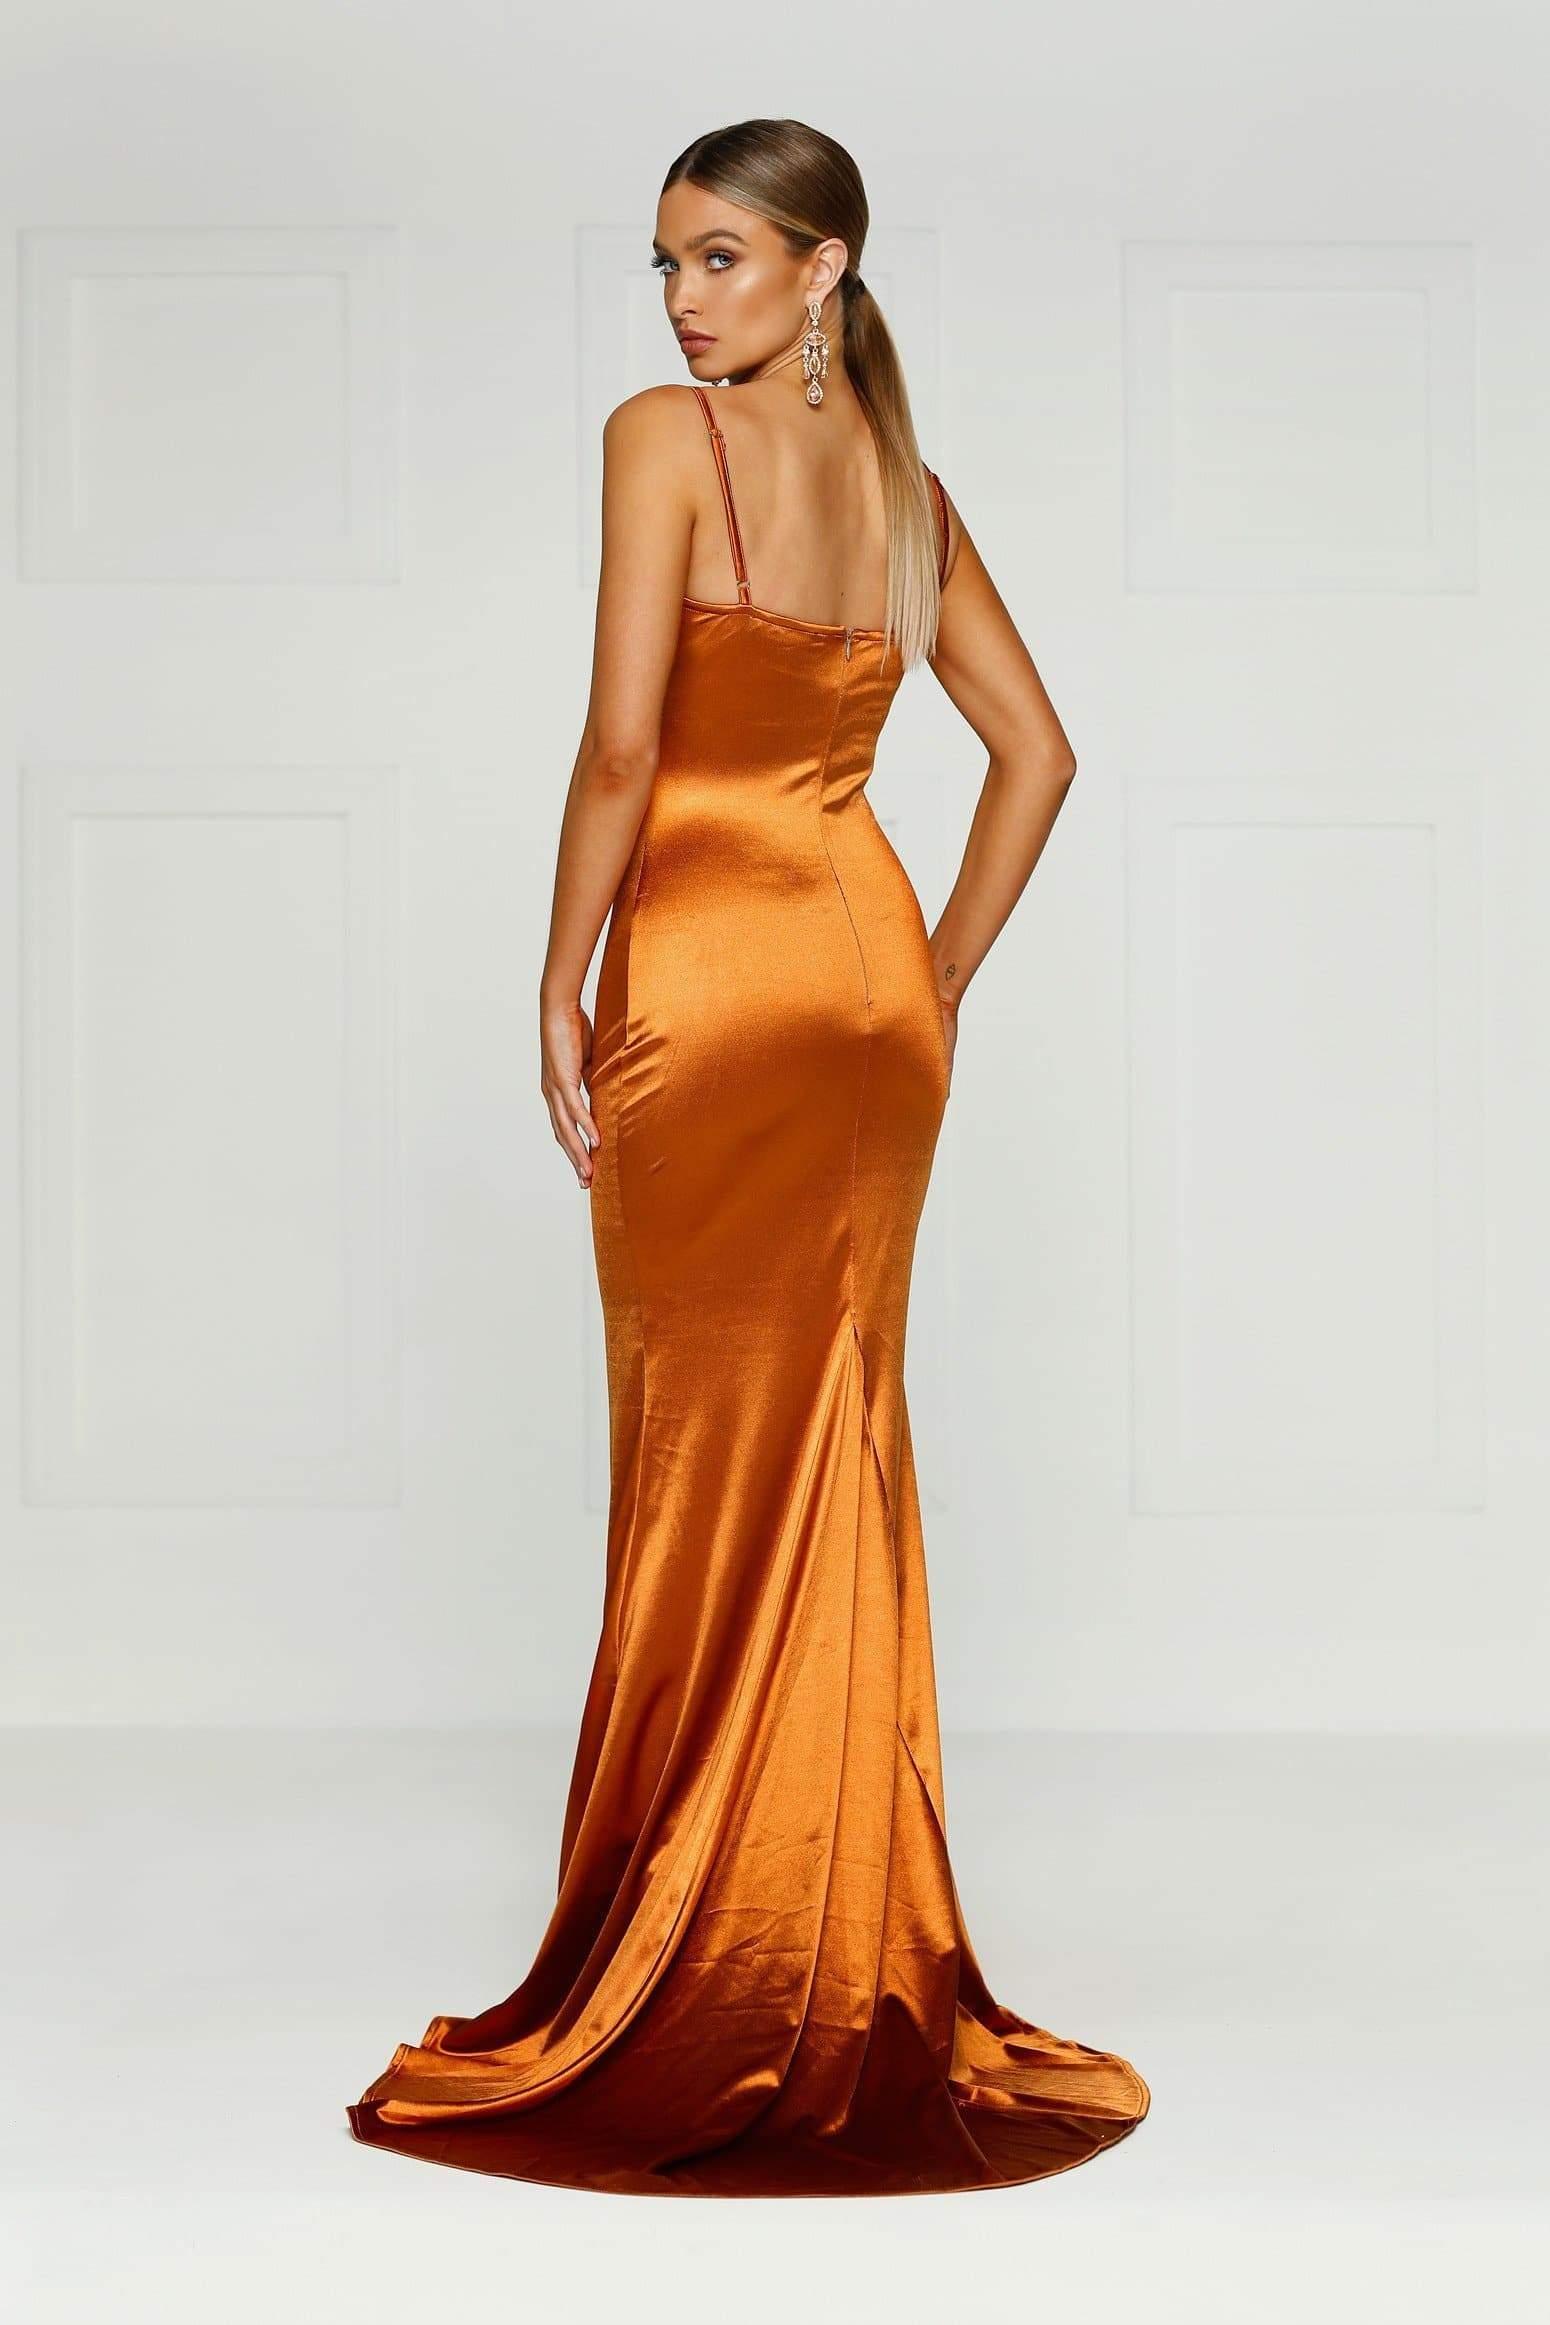 U varijanti od svile, narandžasta haljina djeluje super elegantno - Avaz